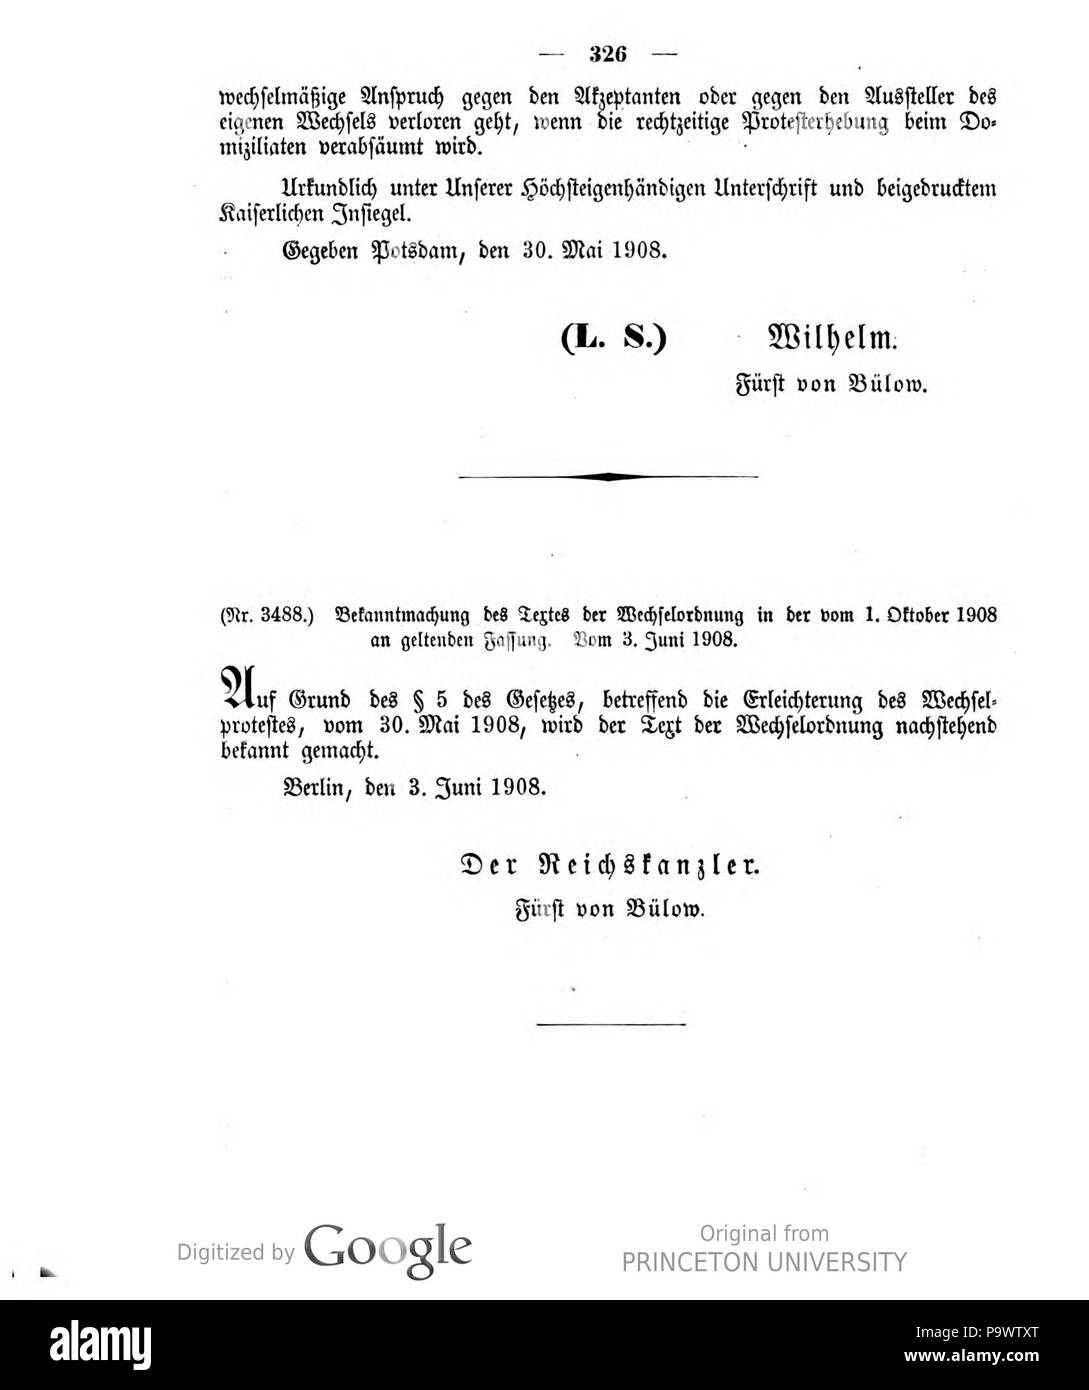 427 Deutsches Reichsgesetzblatt 1908 032 326 Stock Photo